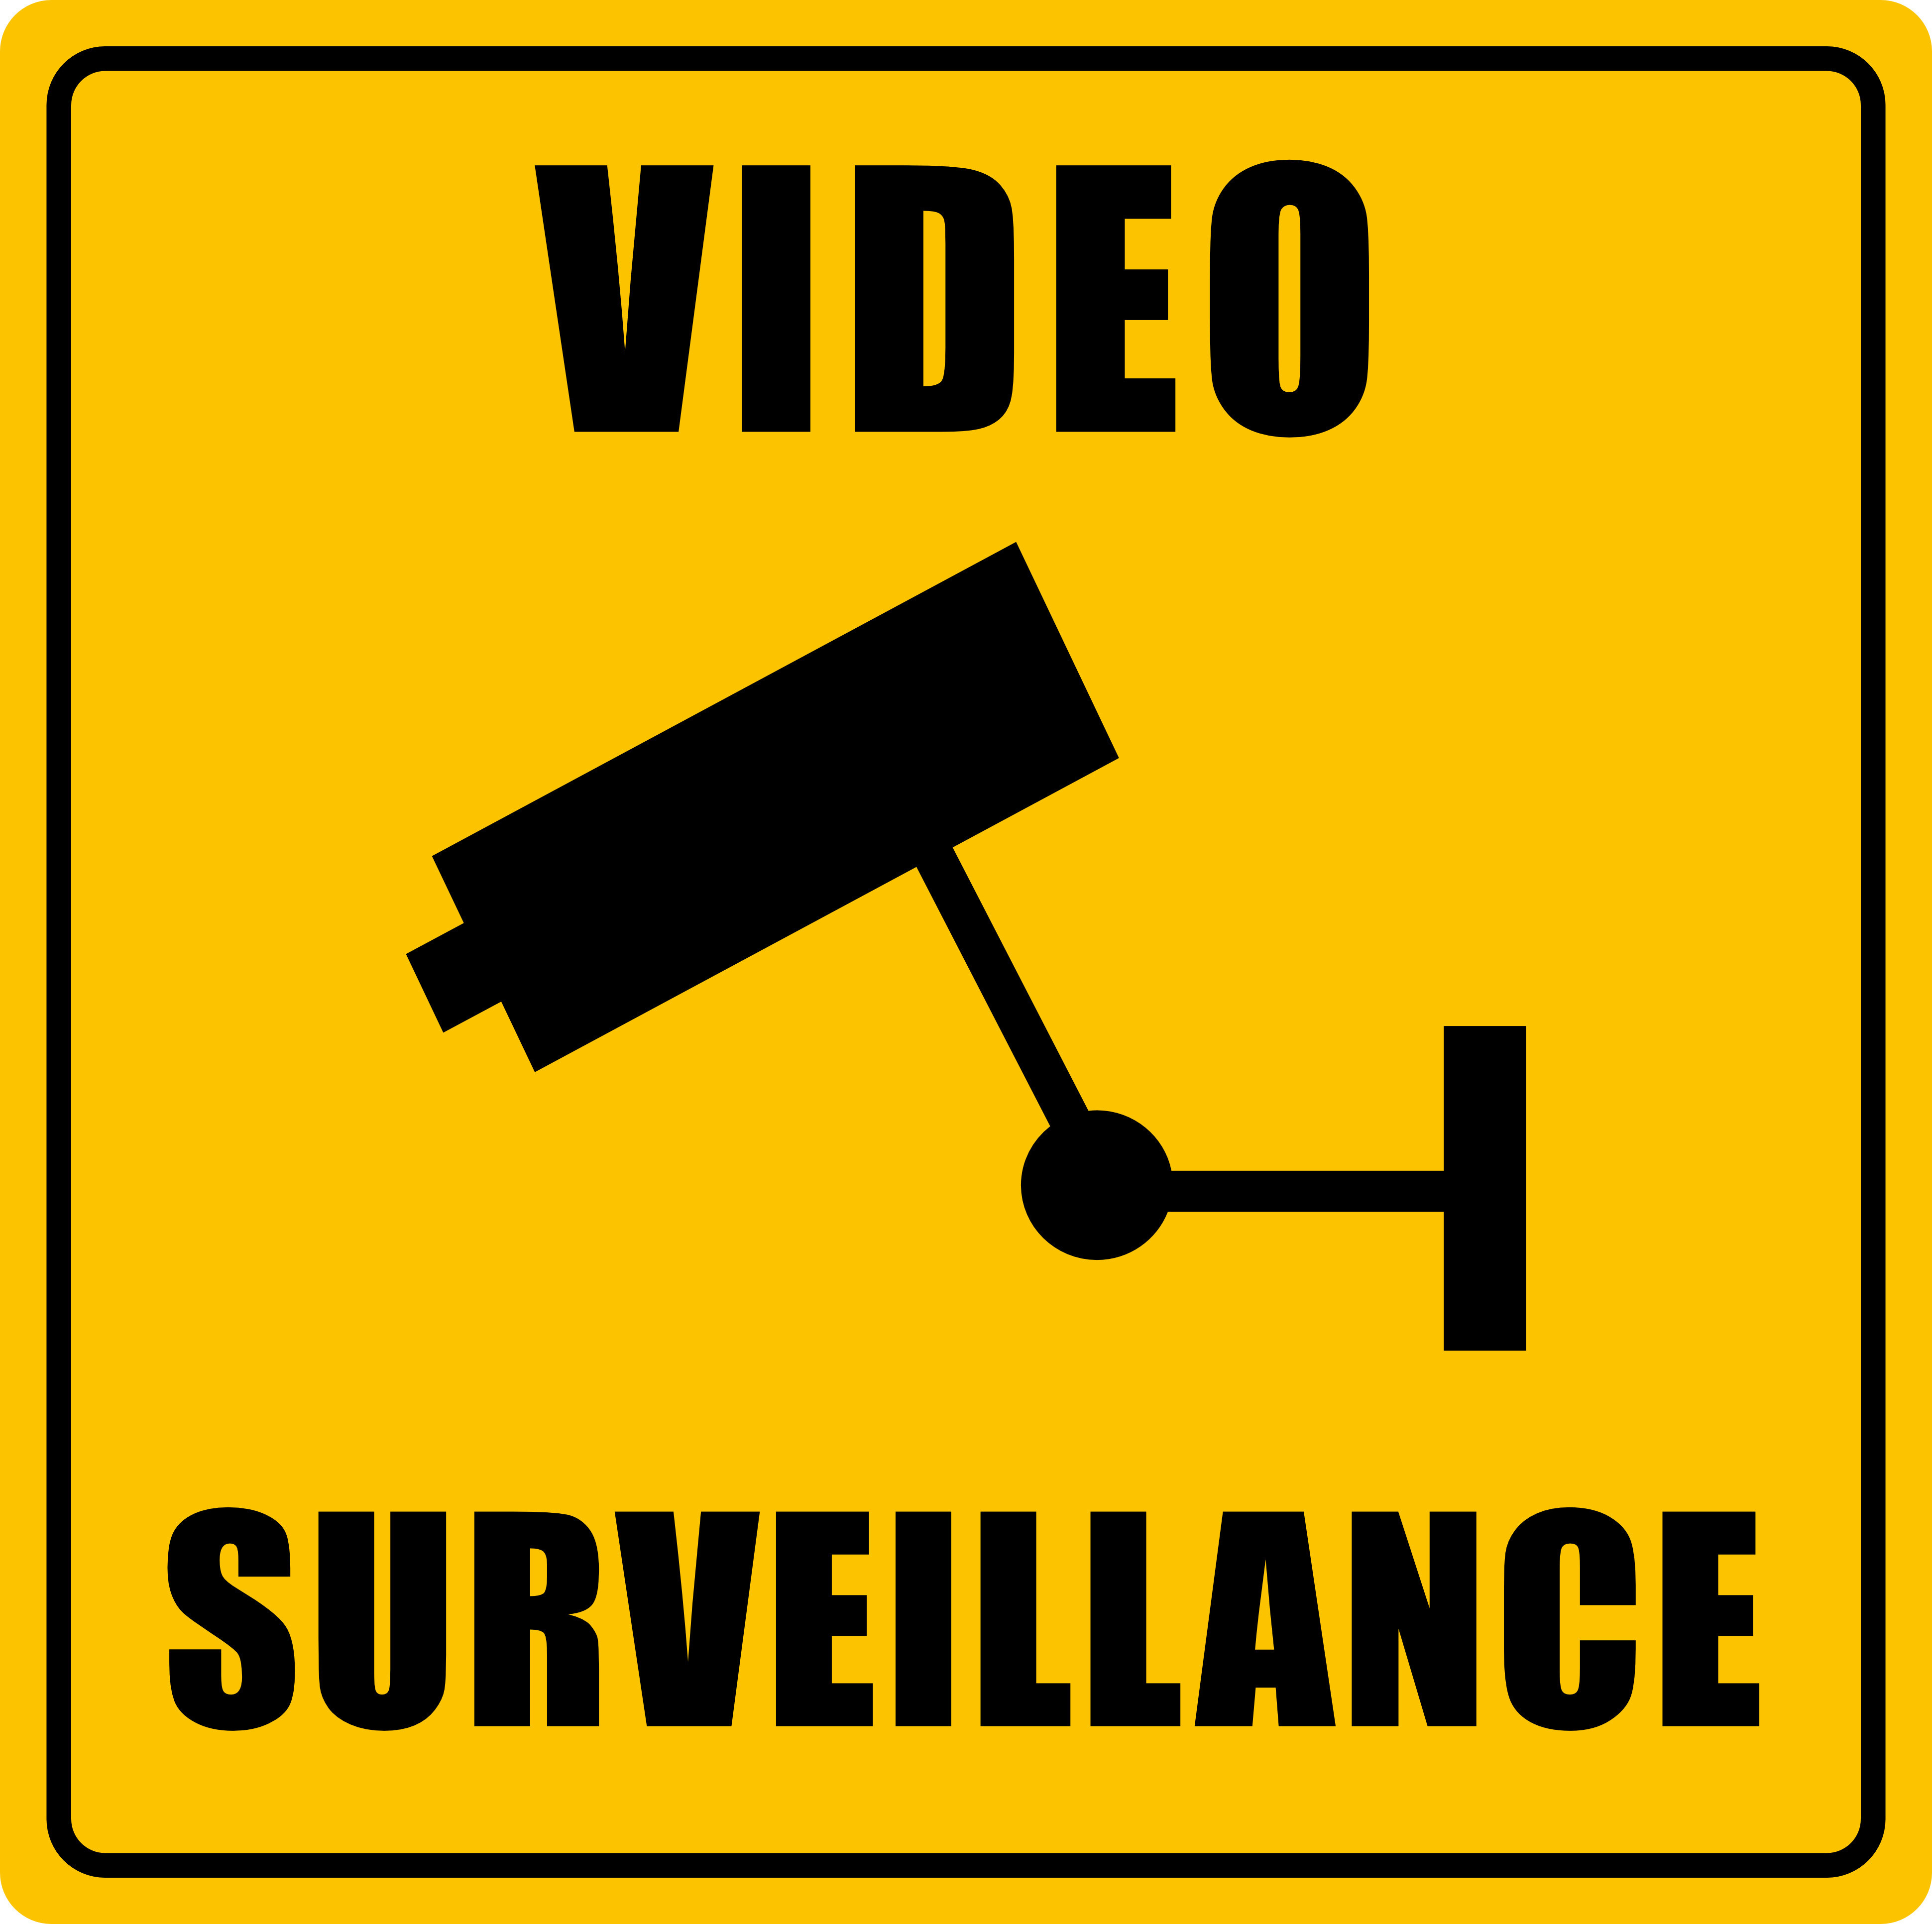 Puncte cheie in istoria supravegherii video